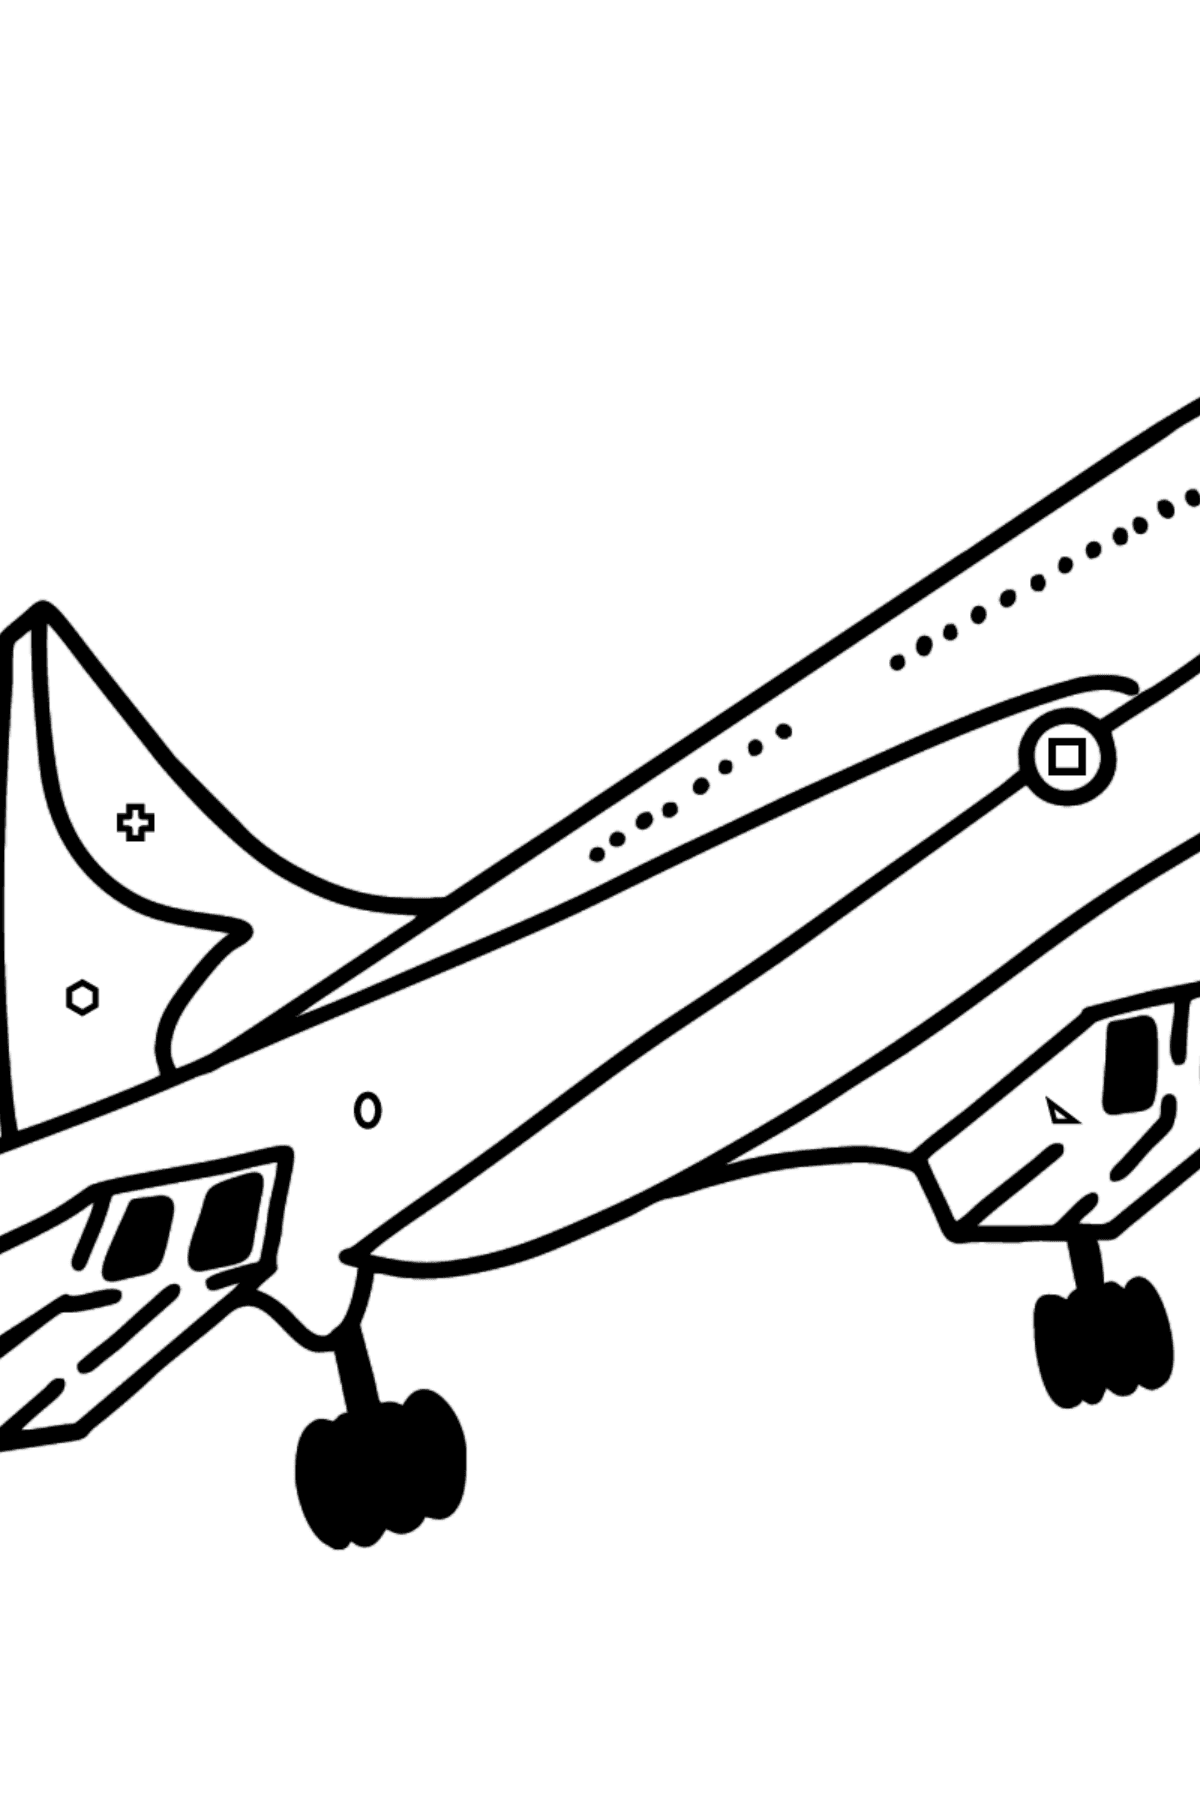 Dibujo de Concorde para colorear - Colorear por Formas Geométricas para Niños